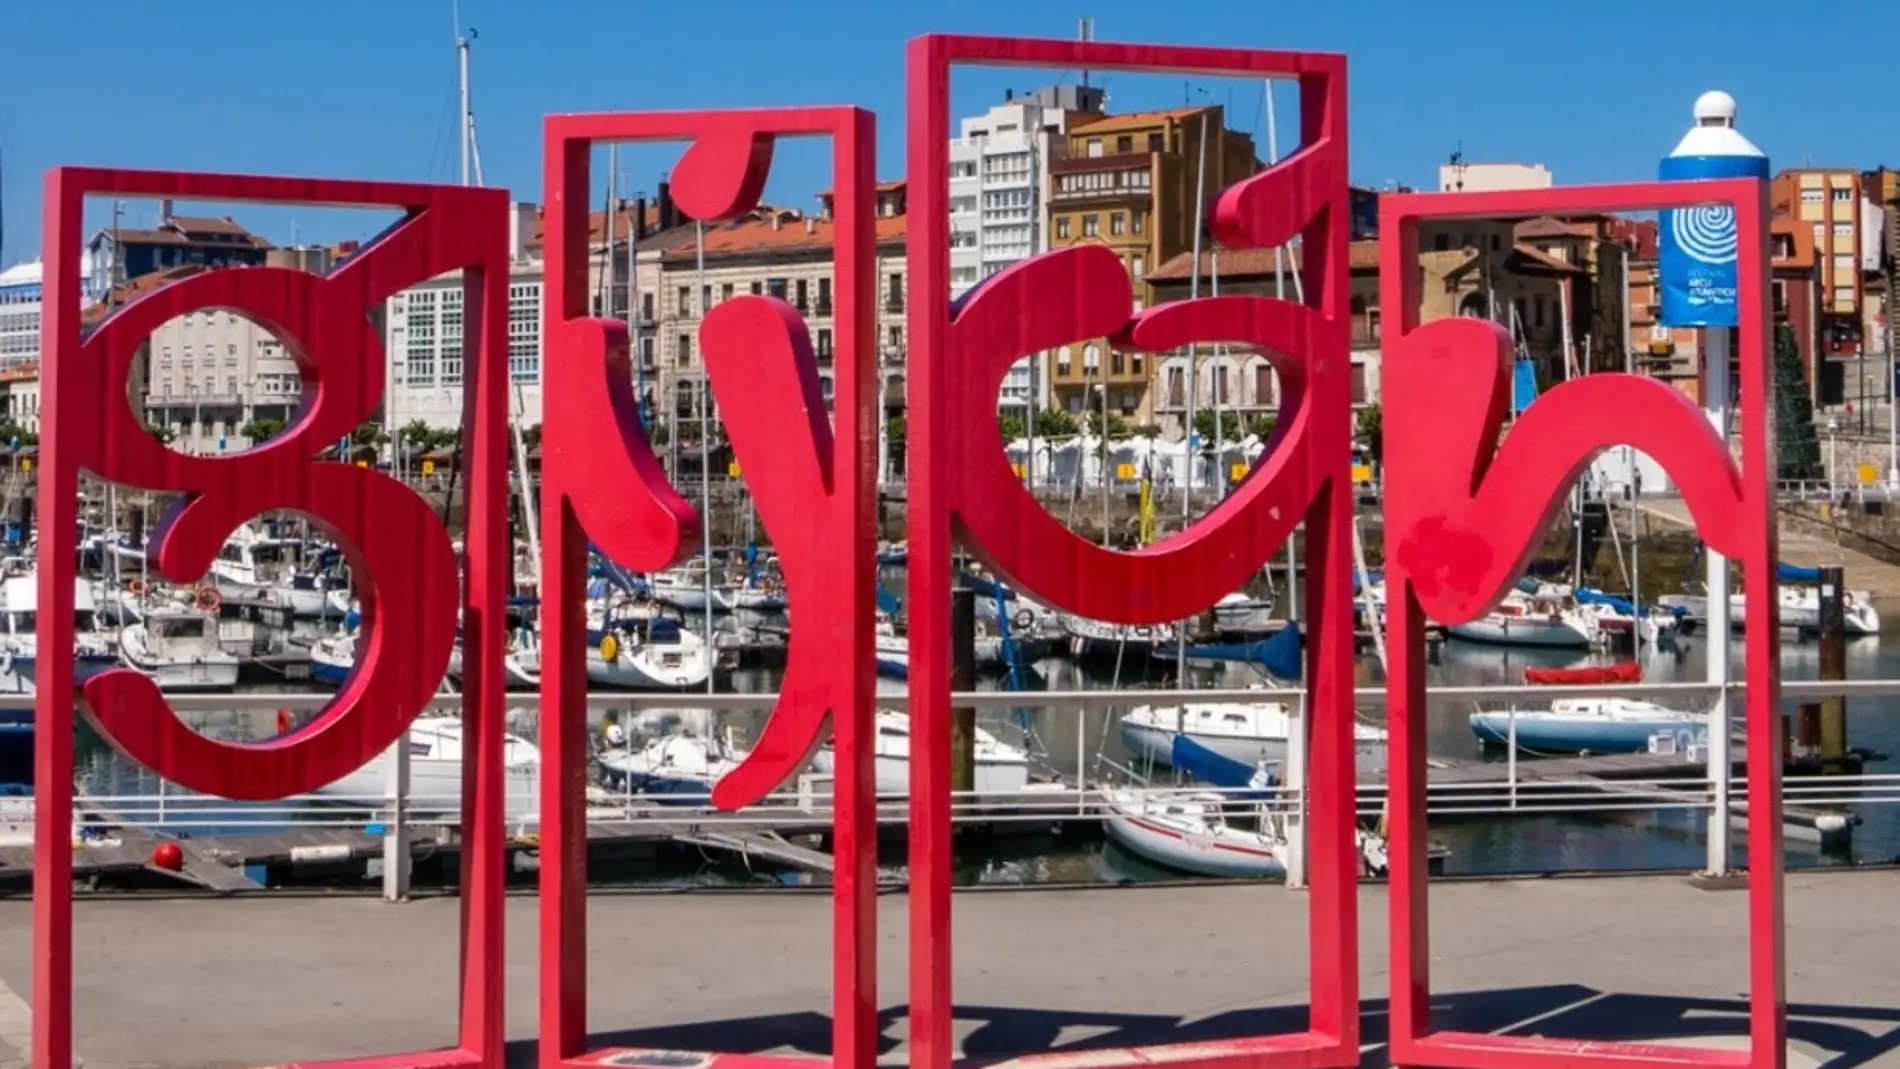 ¿Quieres ganar un fin de semana gratis en Gijón y descubrir la Gijonomía?